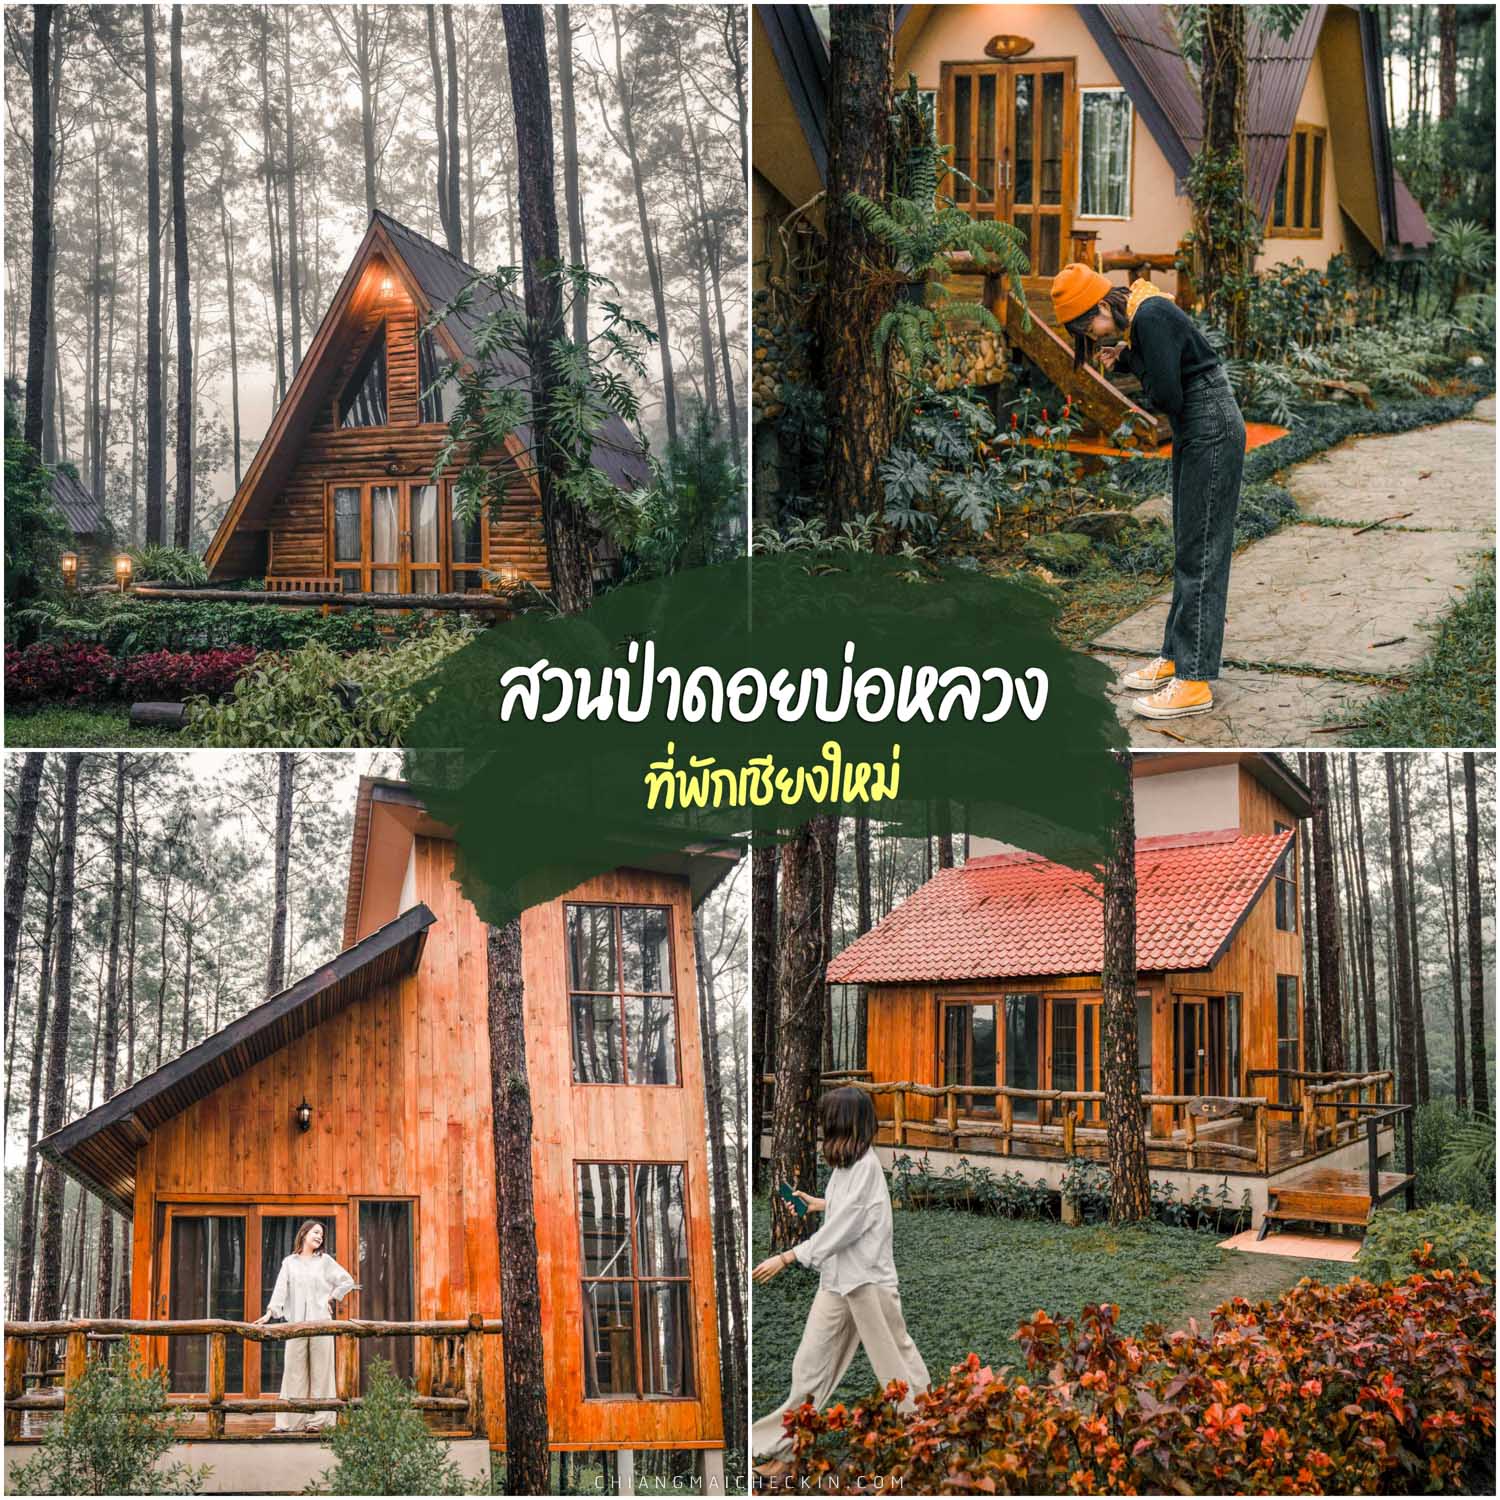 Лесной парк Дой Бо Луанг, Чиангмай, самое красивое место посреди соснового леса, чрезвычайно естественное, атмосфера как в доме из сказки. Утром был сильный туман.